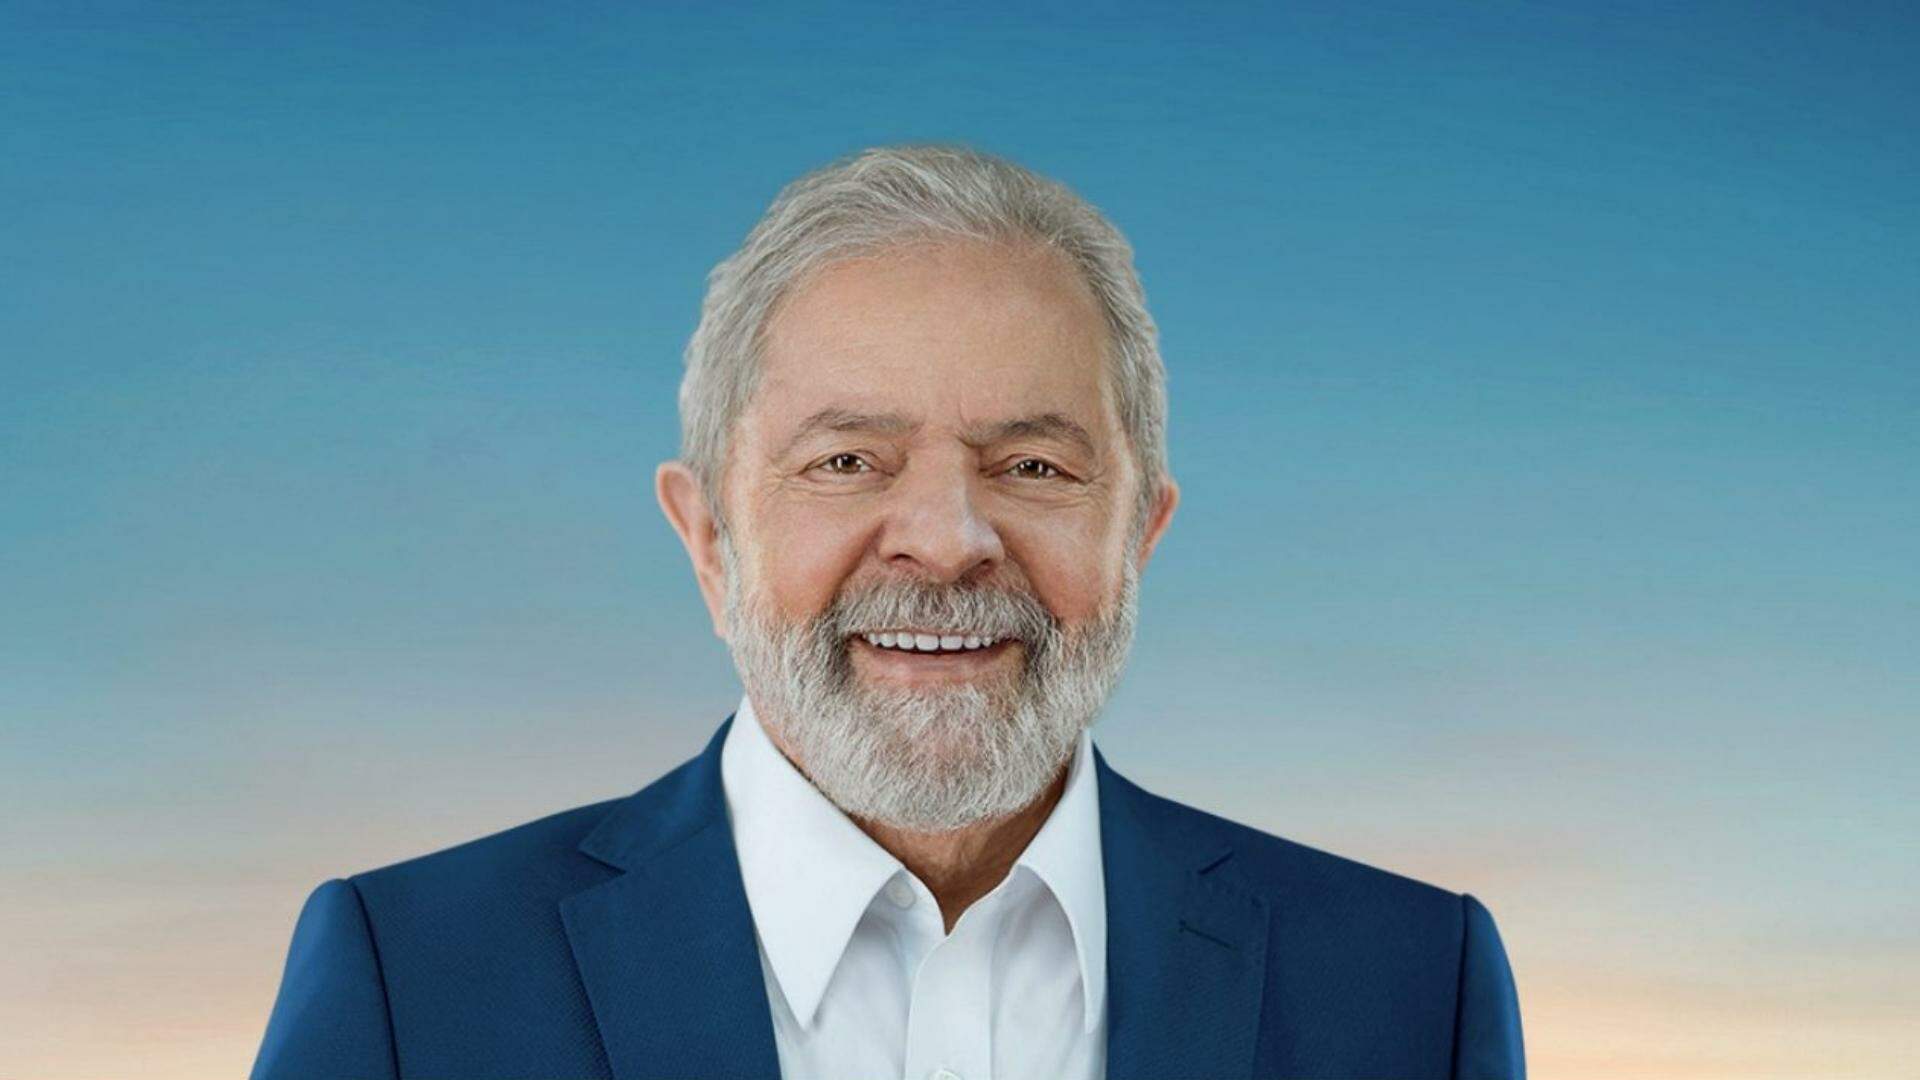 Eleições 2022: Lula é eleito presidente com 50,83% dos votos - Metropolitana FM